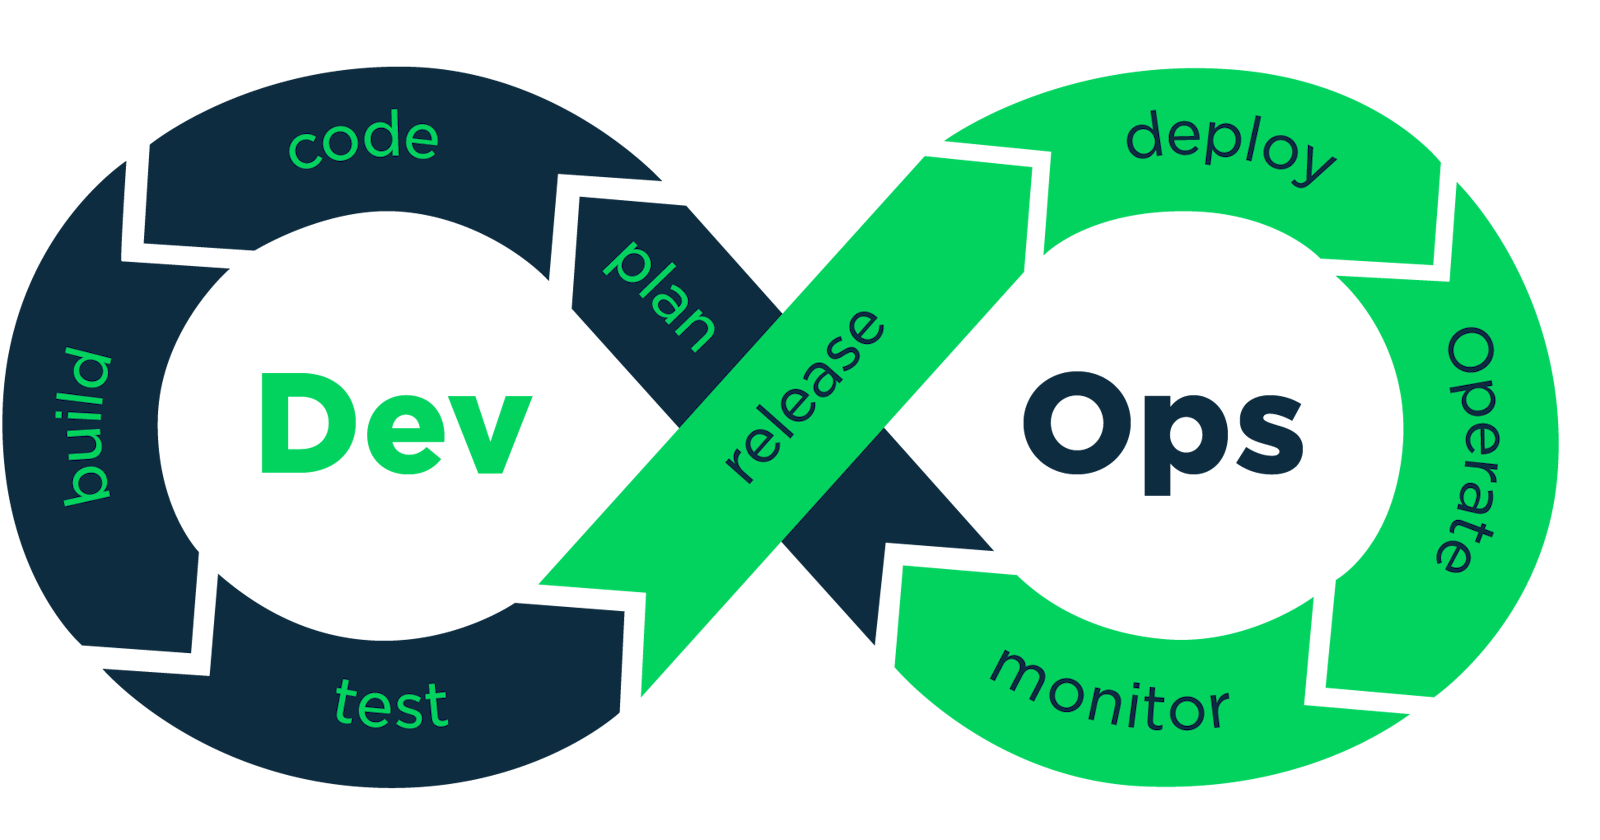 Basic Understanding of DevOps